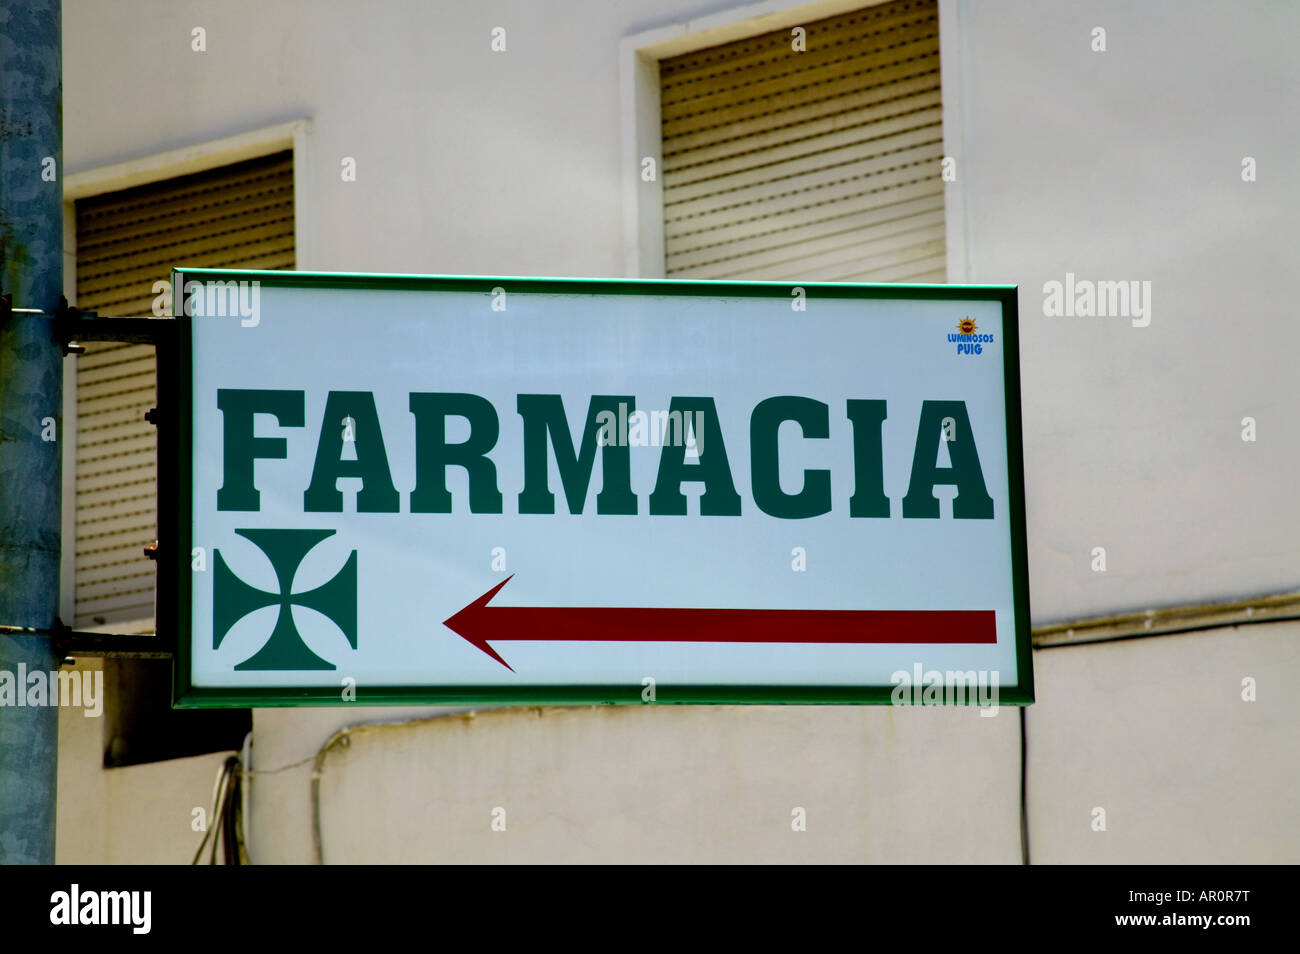 Sign  for Farmacia, Huelva Spain Stock Photo